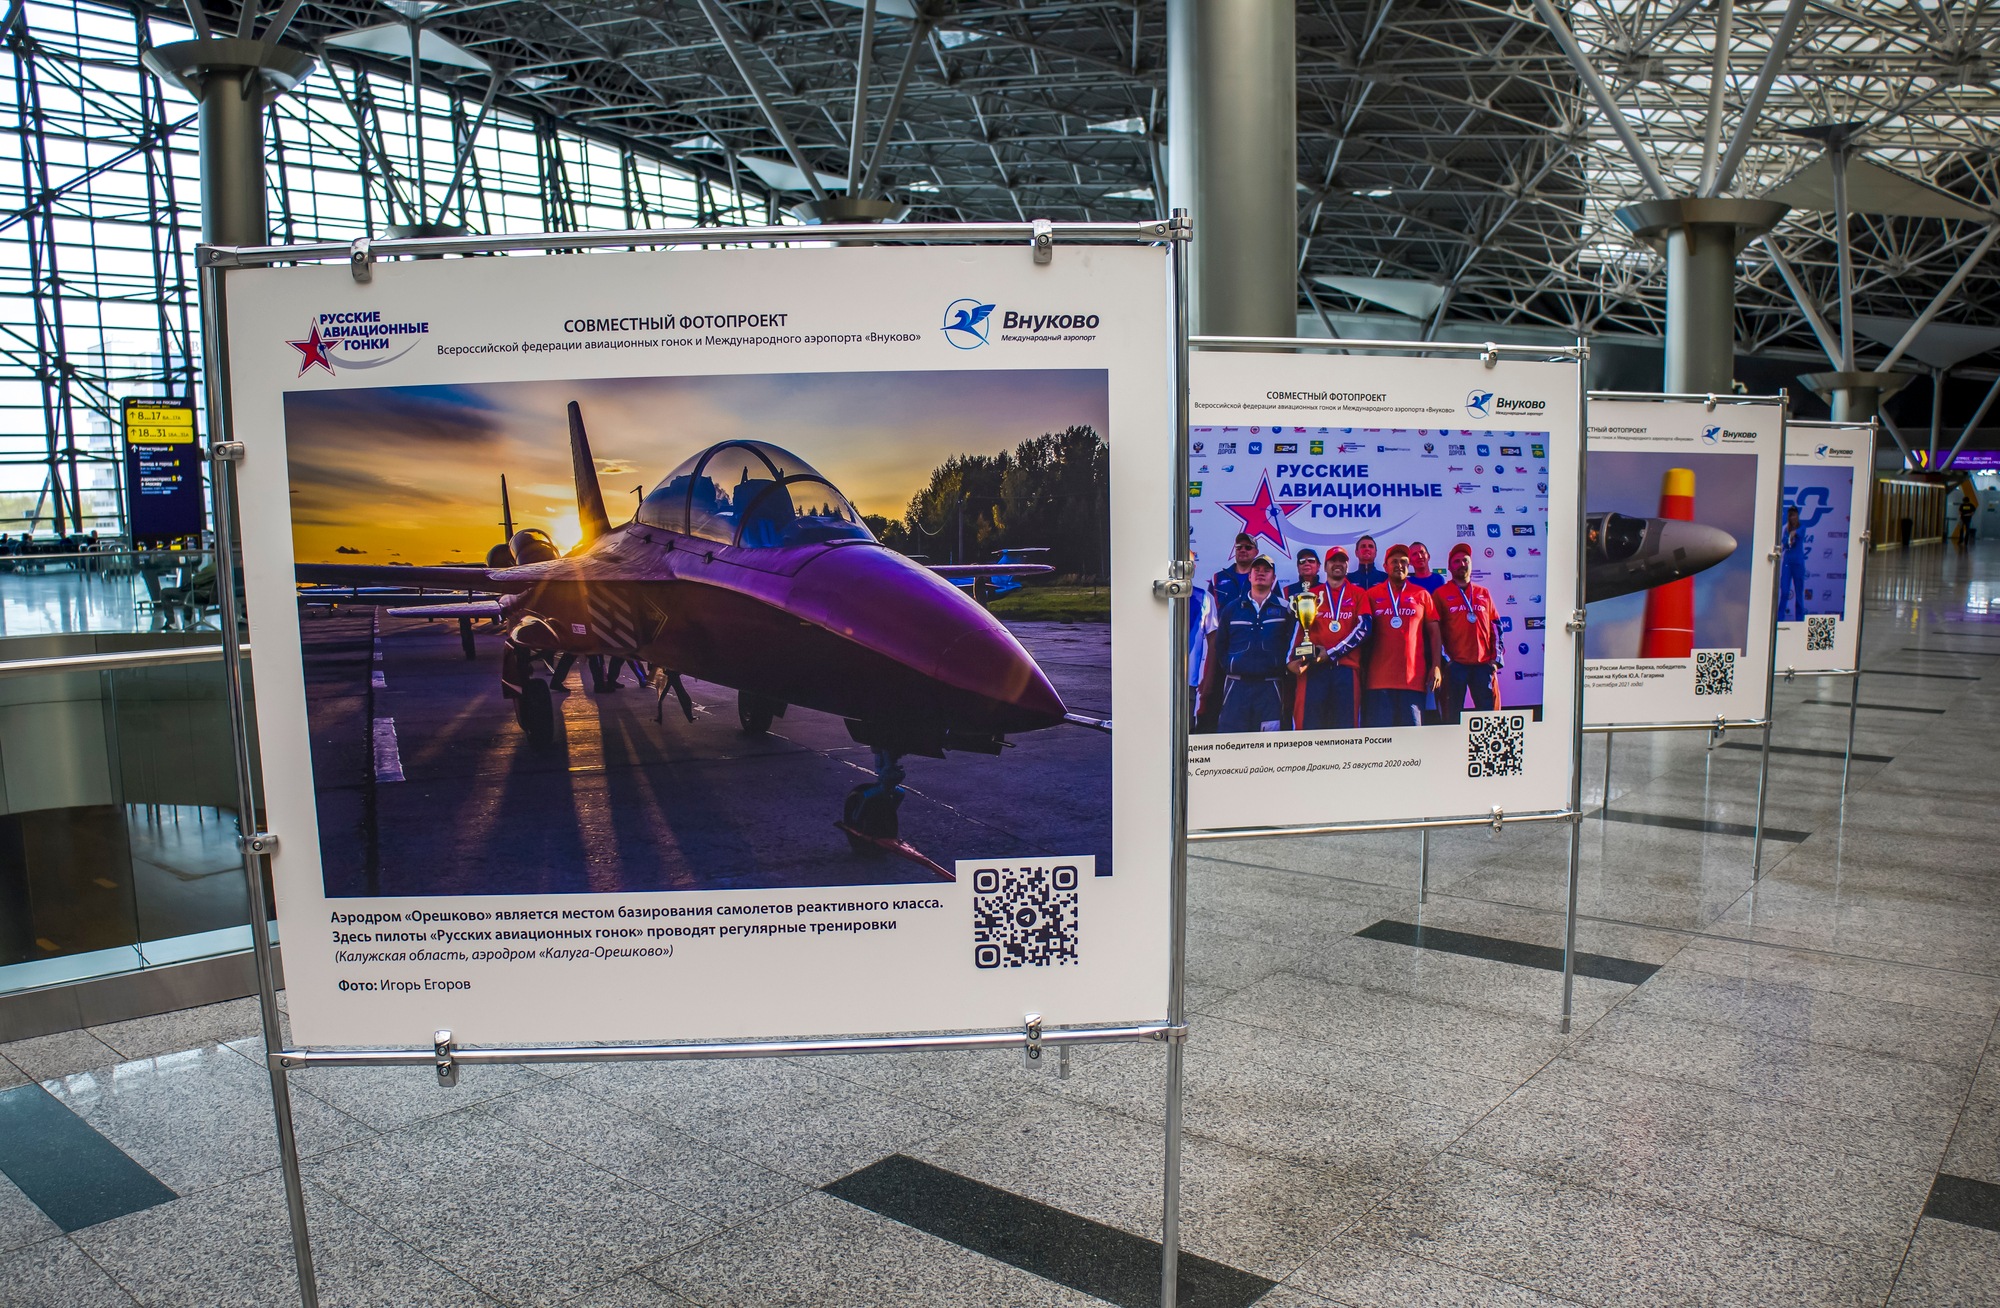 В аэропорту Внуково открылась фотовыставка Русские авиационные гонки